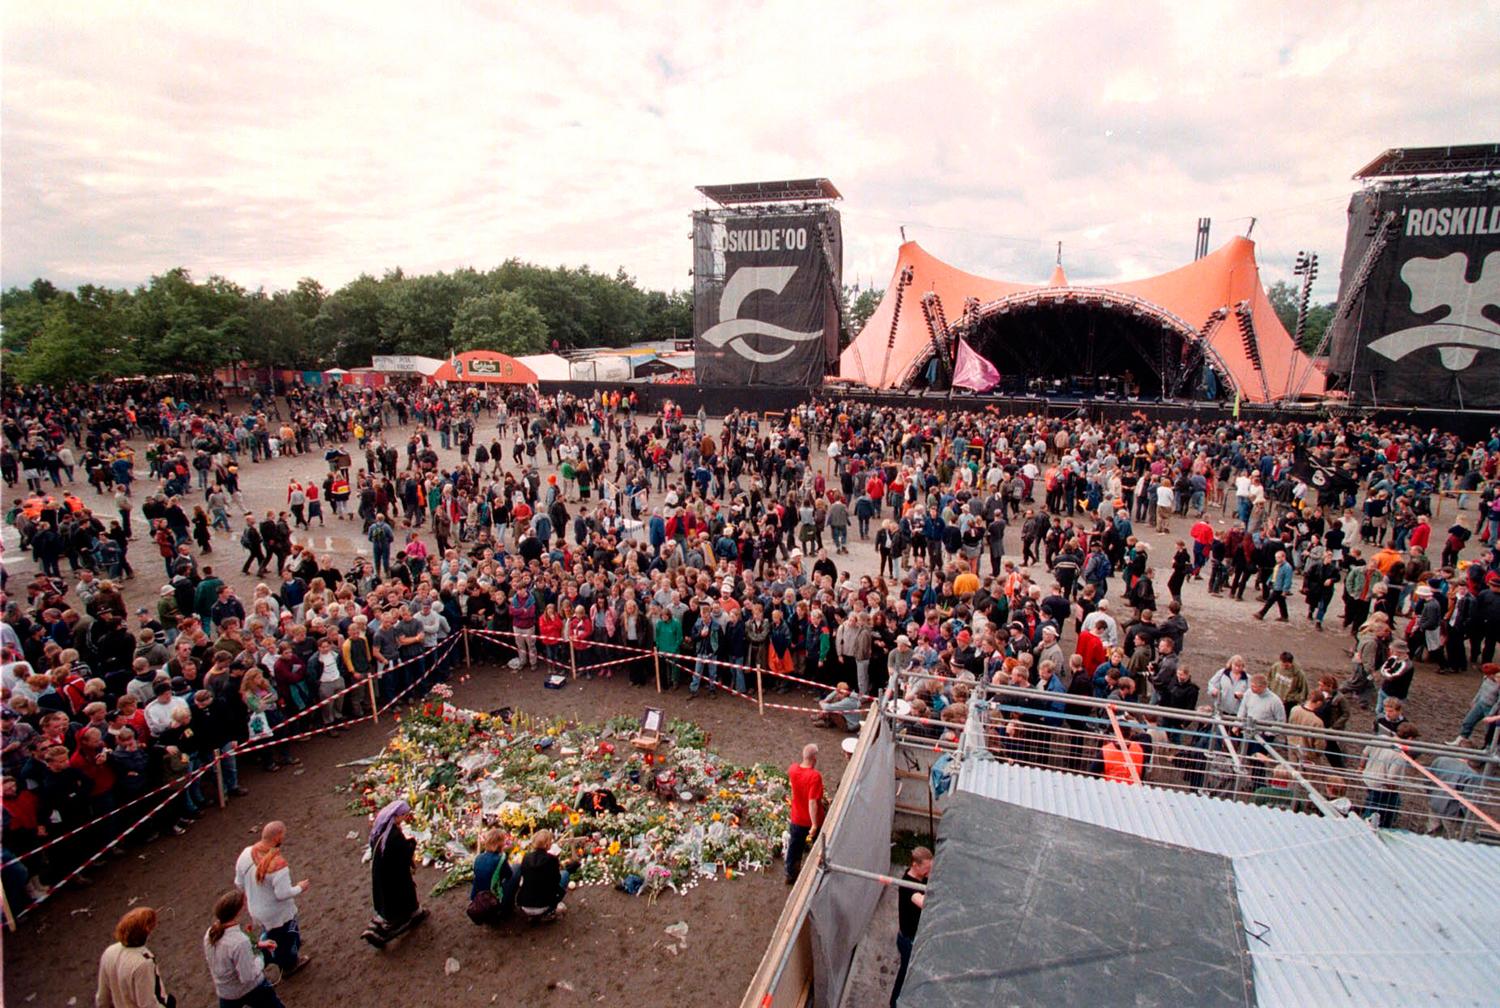 Det var framför den stora scenen på Roskilde-festivalen som dödsolyckan inträffade år 2000.